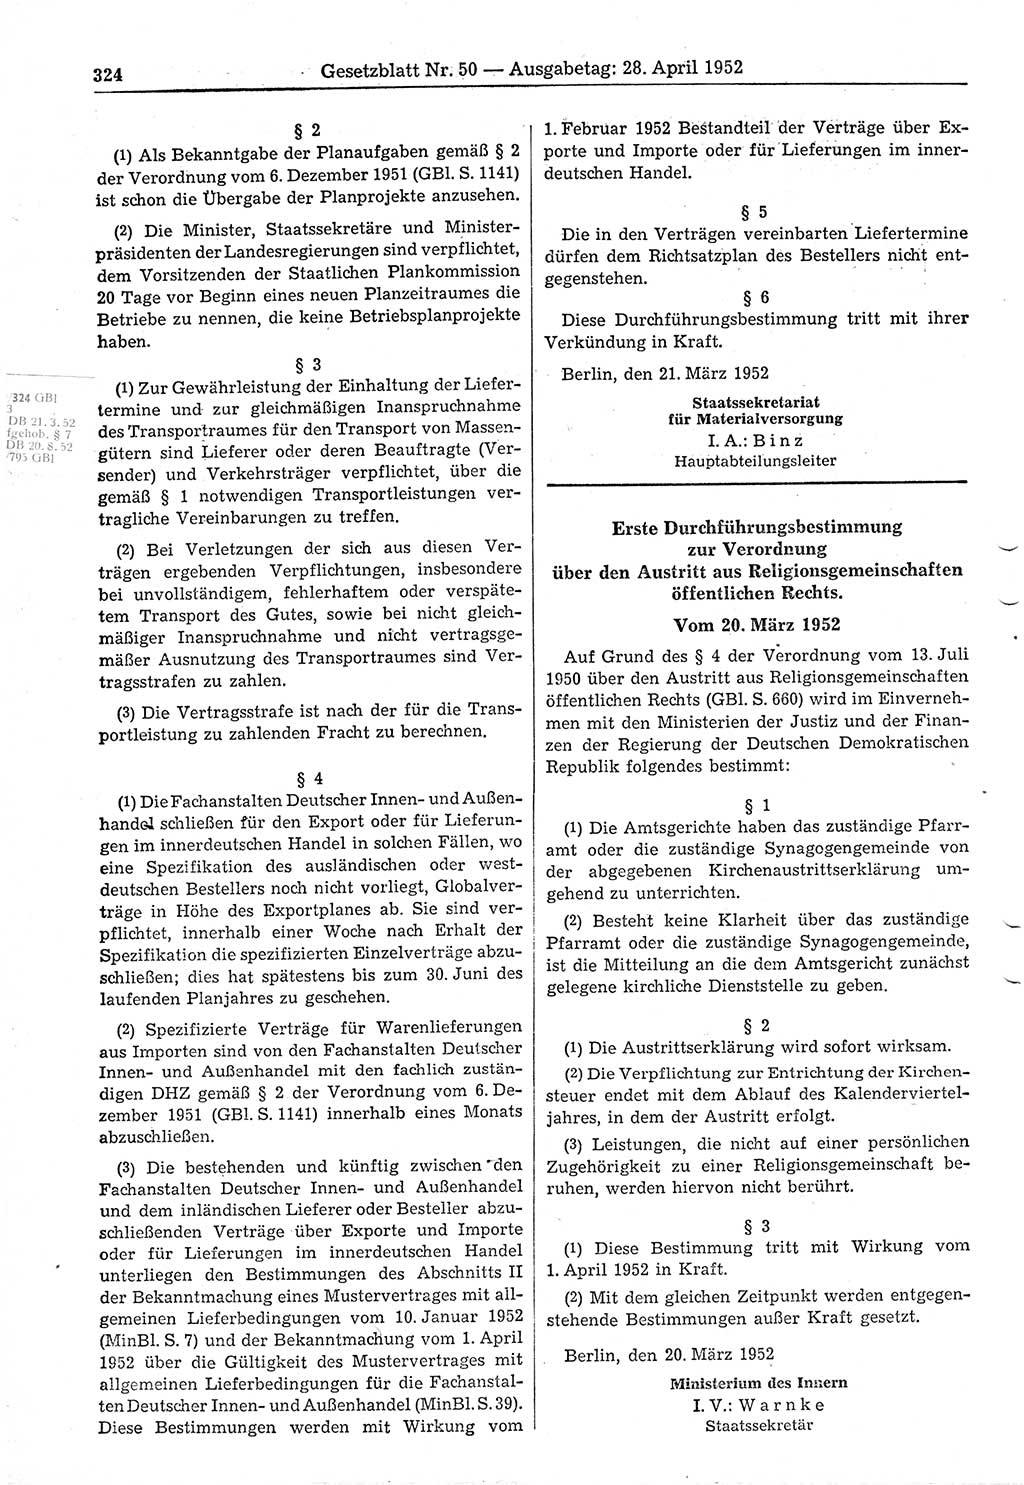 Gesetzblatt (GBl.) der Deutschen Demokratischen Republik (DDR) 1952, Seite 324 (GBl. DDR 1952, S. 324)